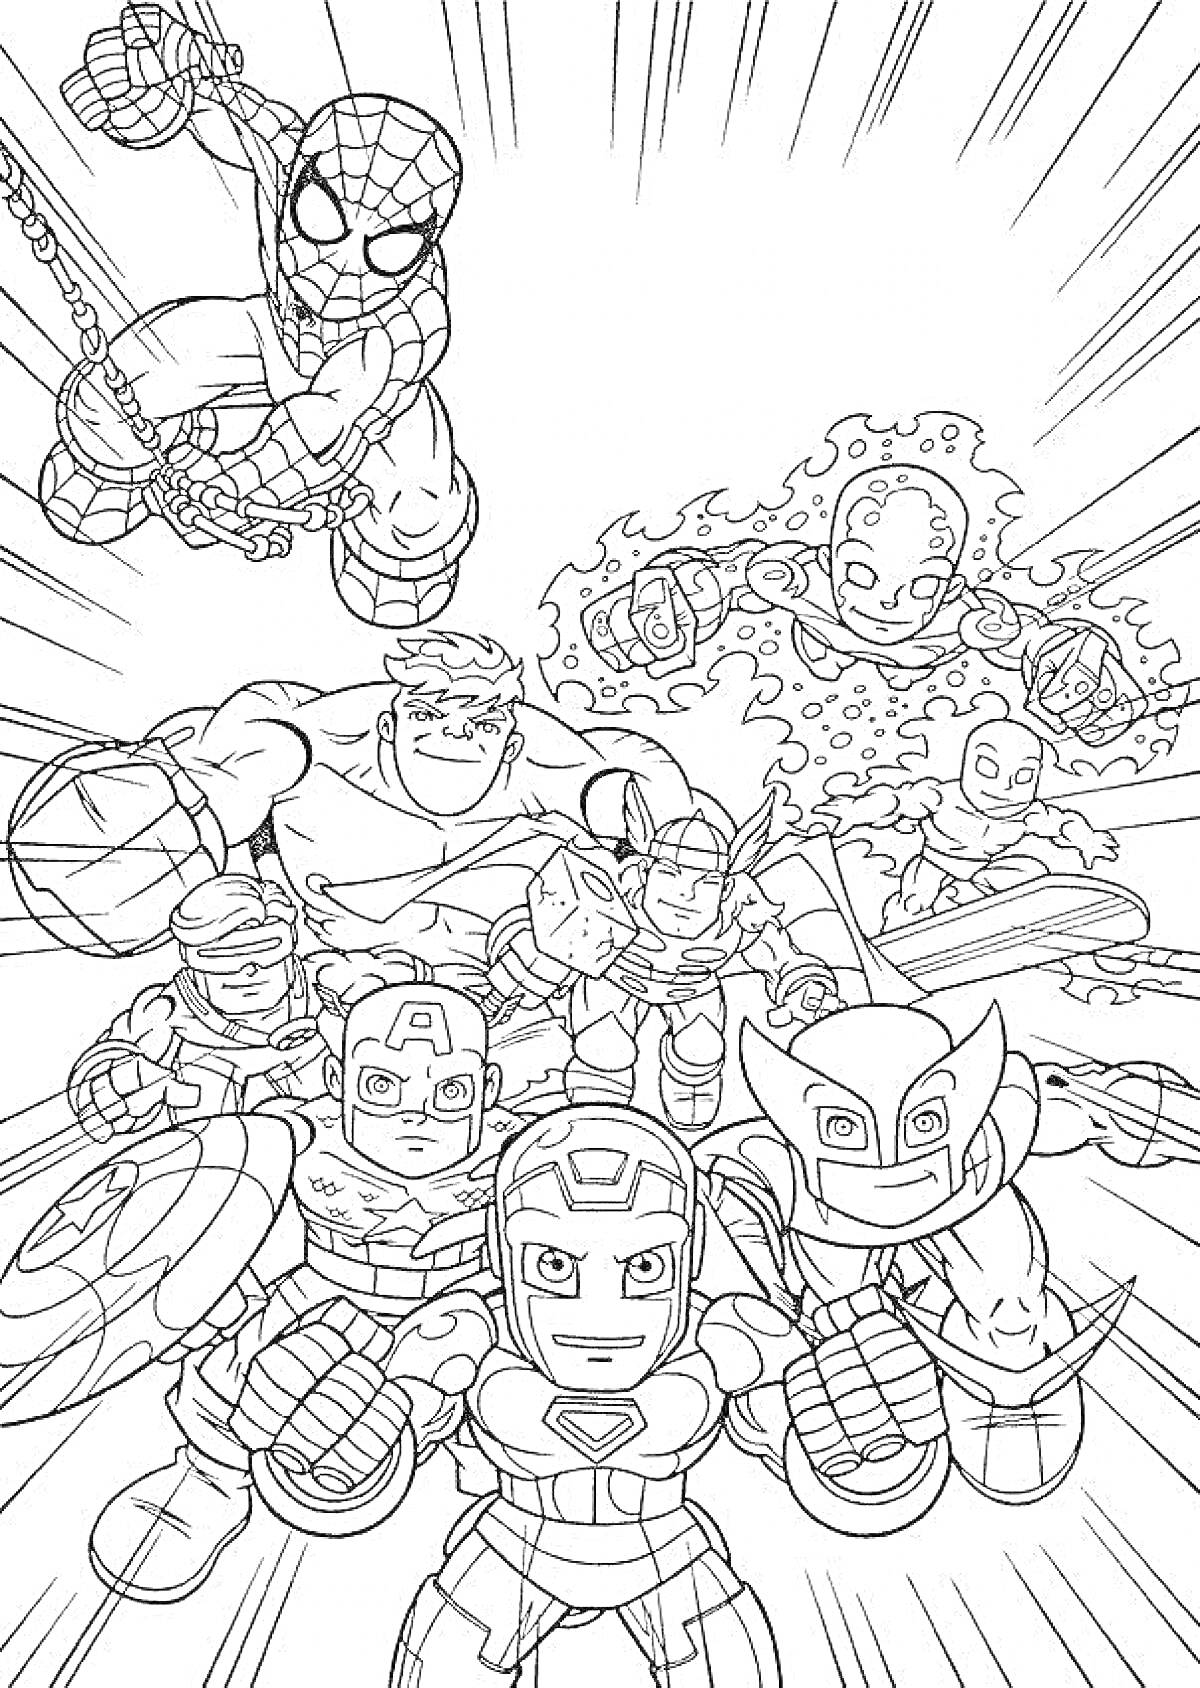 раскраска с героями Марвел - Человек-Паук, Тор, Капитан Америка, Халк, Железный Человек, Росомаха, Человек-Факел, Мисс Марвел